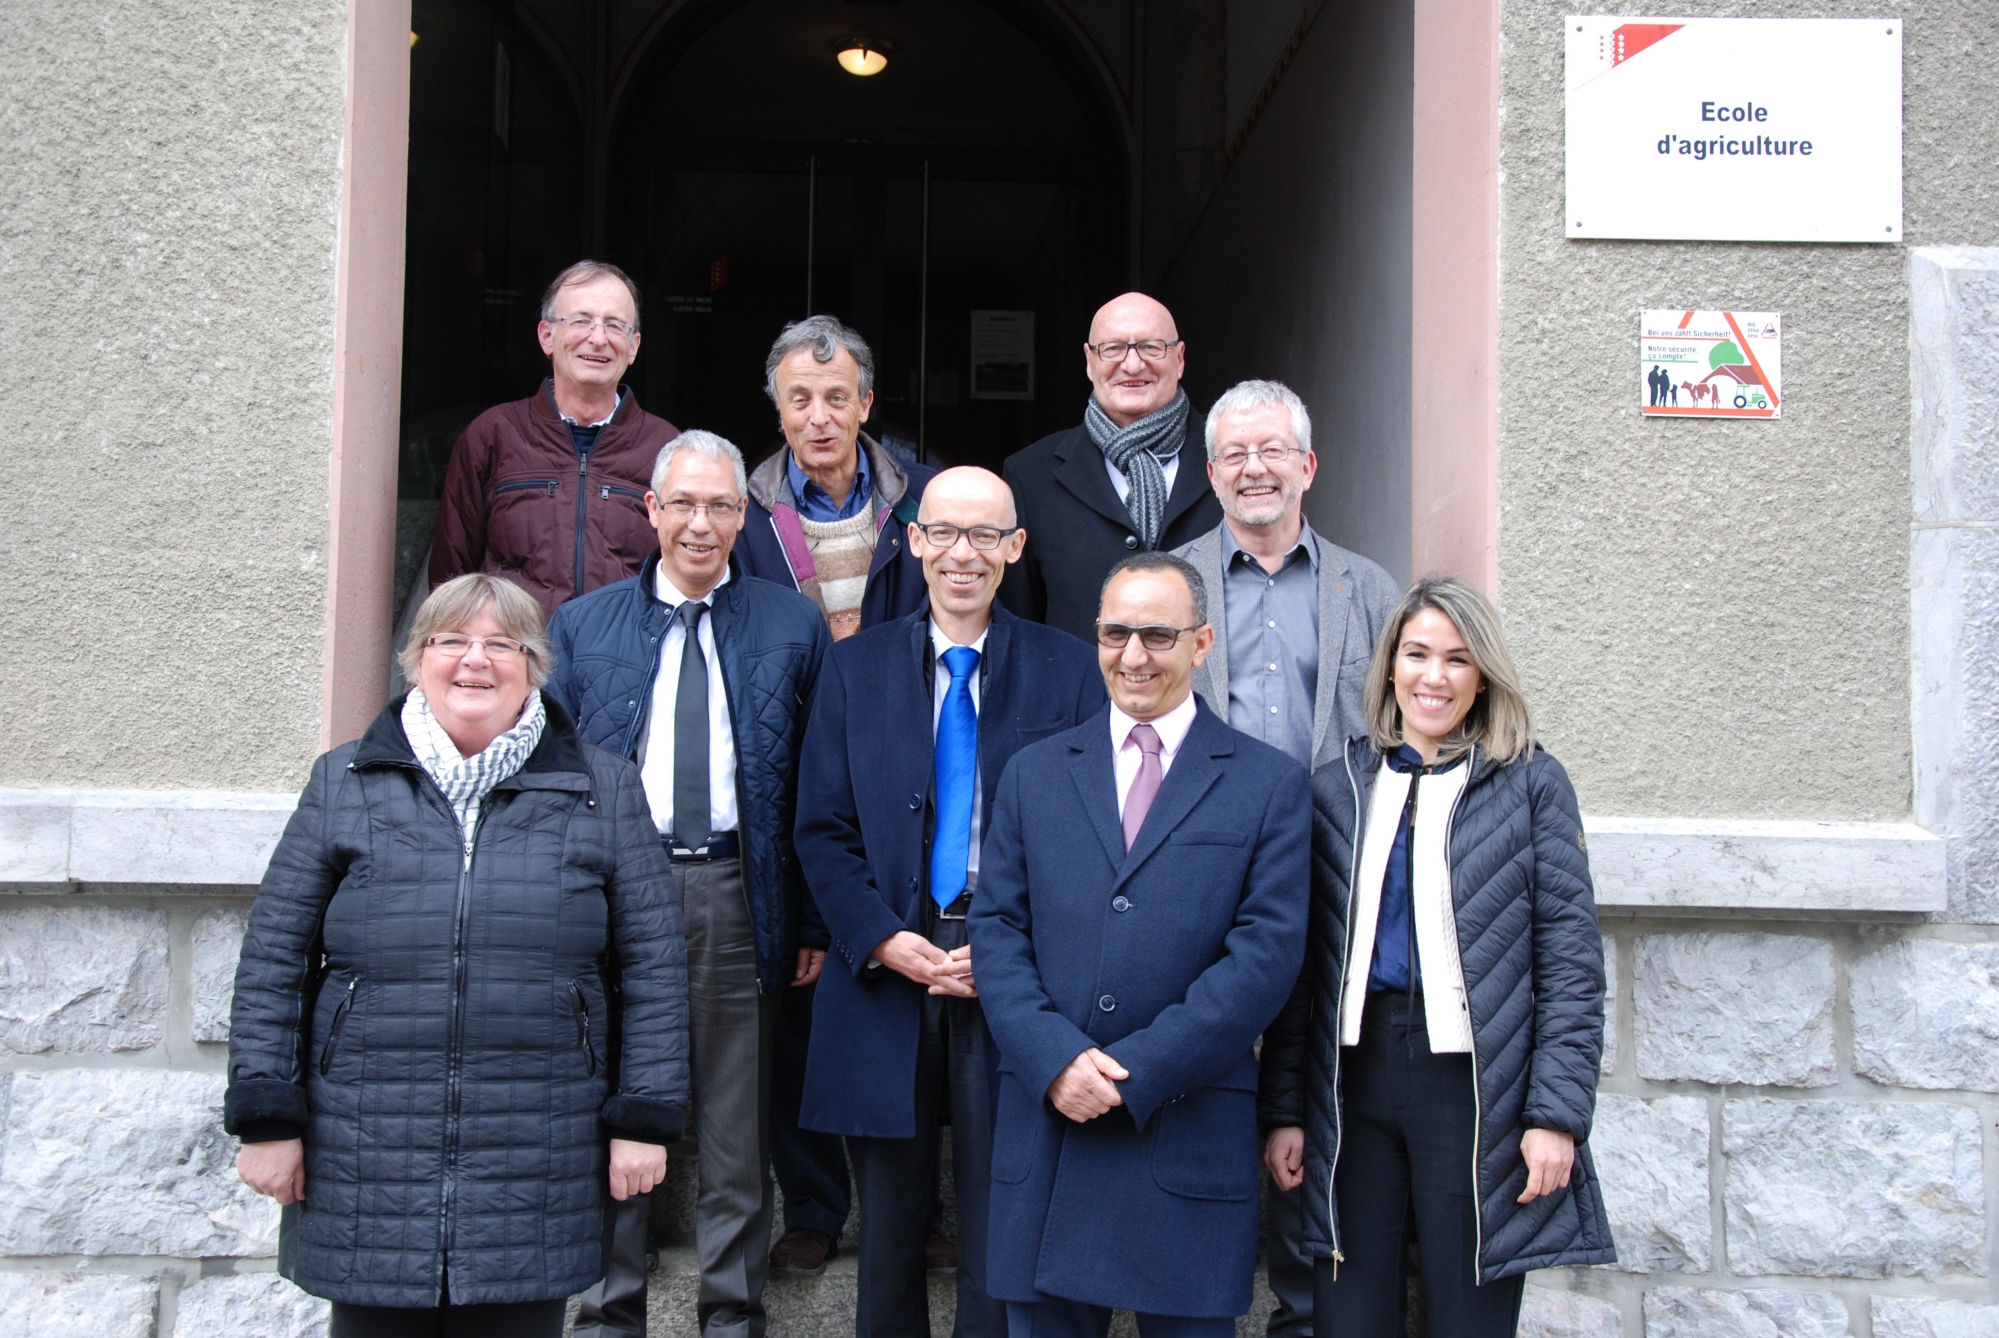 Les membres de la délégation officielle du Maroc ont passé une semaine en Valais.